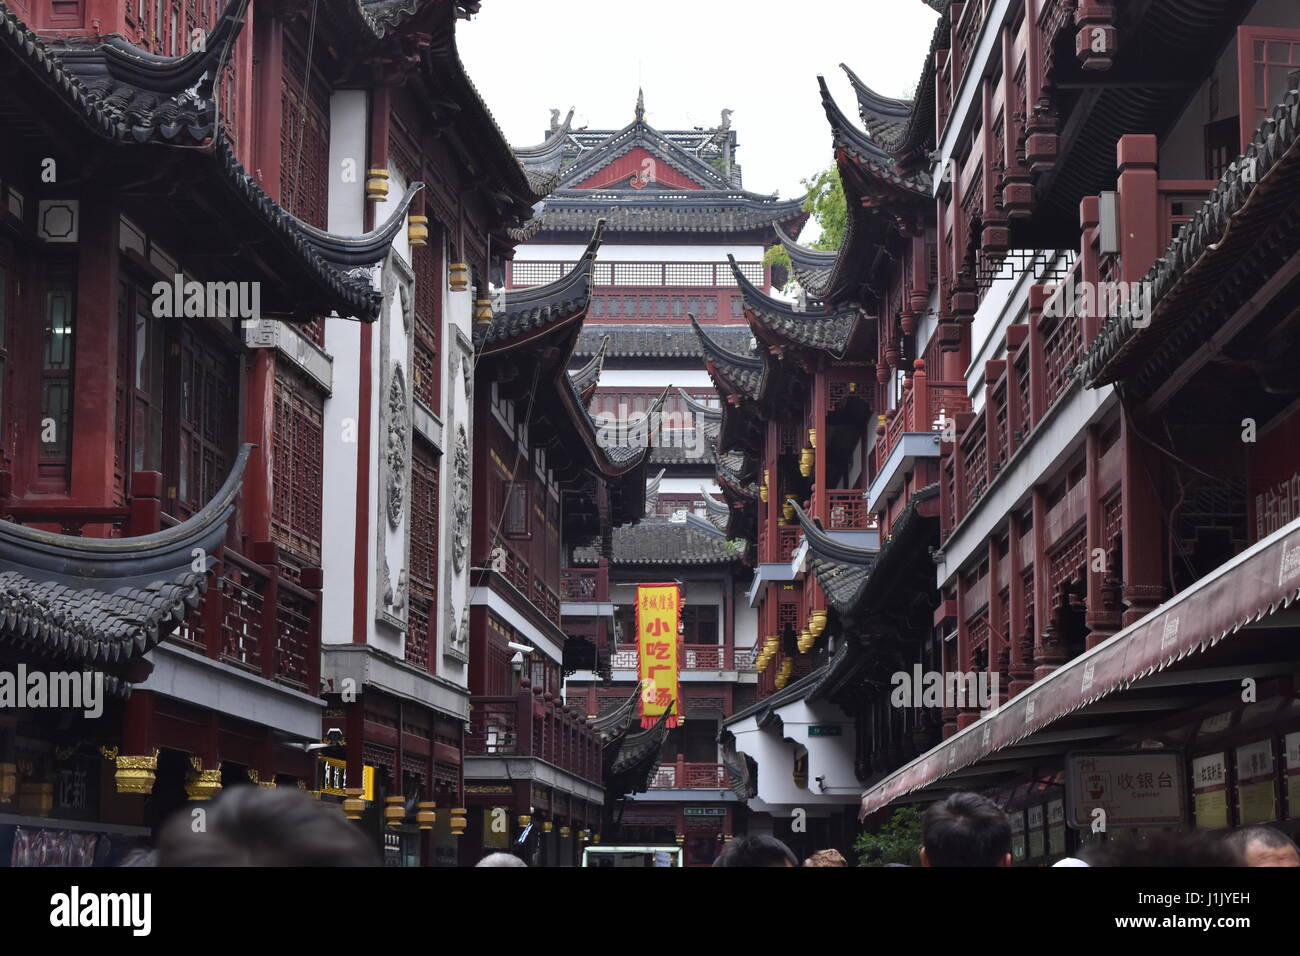 Marché traditionnel de Shanghai Yu Garden alley et façade en bois - Chine Banque D'Images